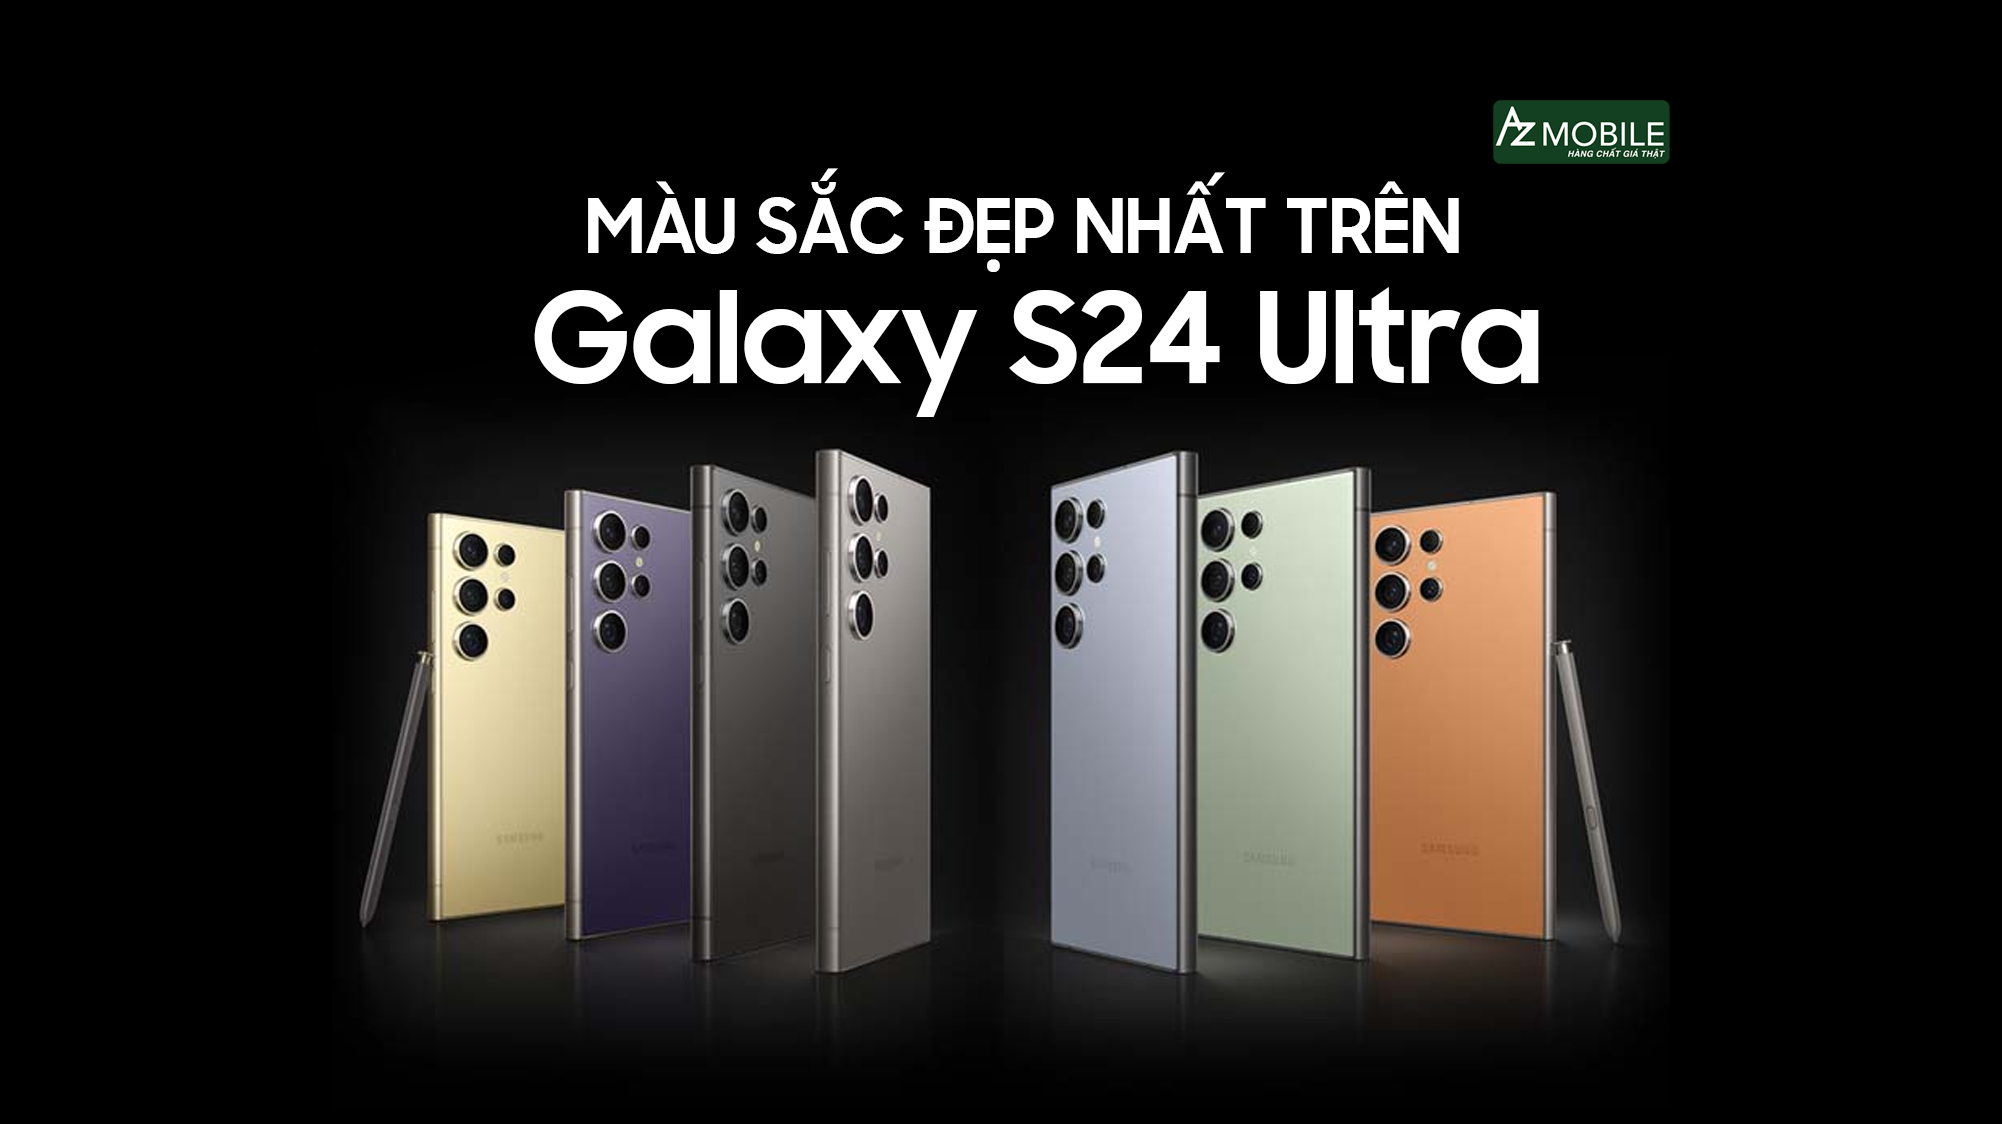 Samsung galaxy s24 bản mỹ màu nào đẹp nhất?